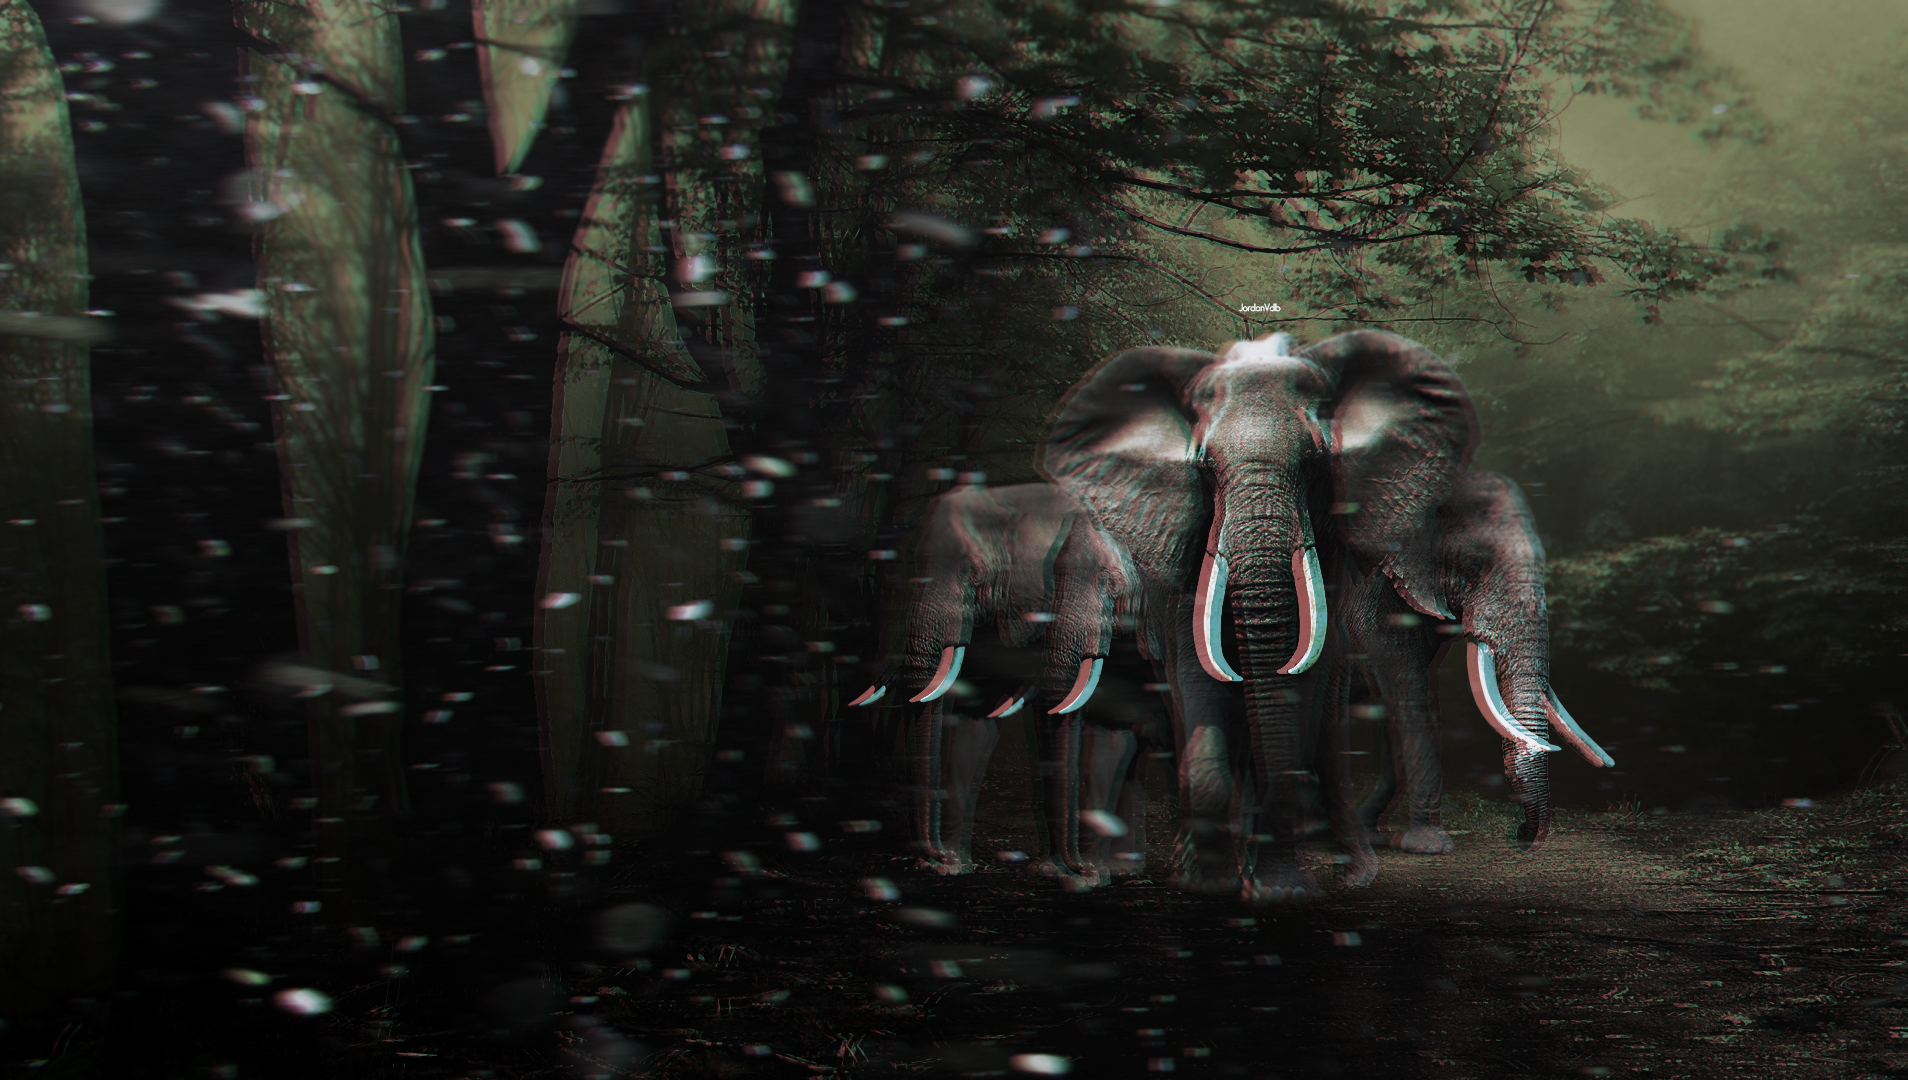 General 1908x1080 elephant photo manipulation photoshopped distortion